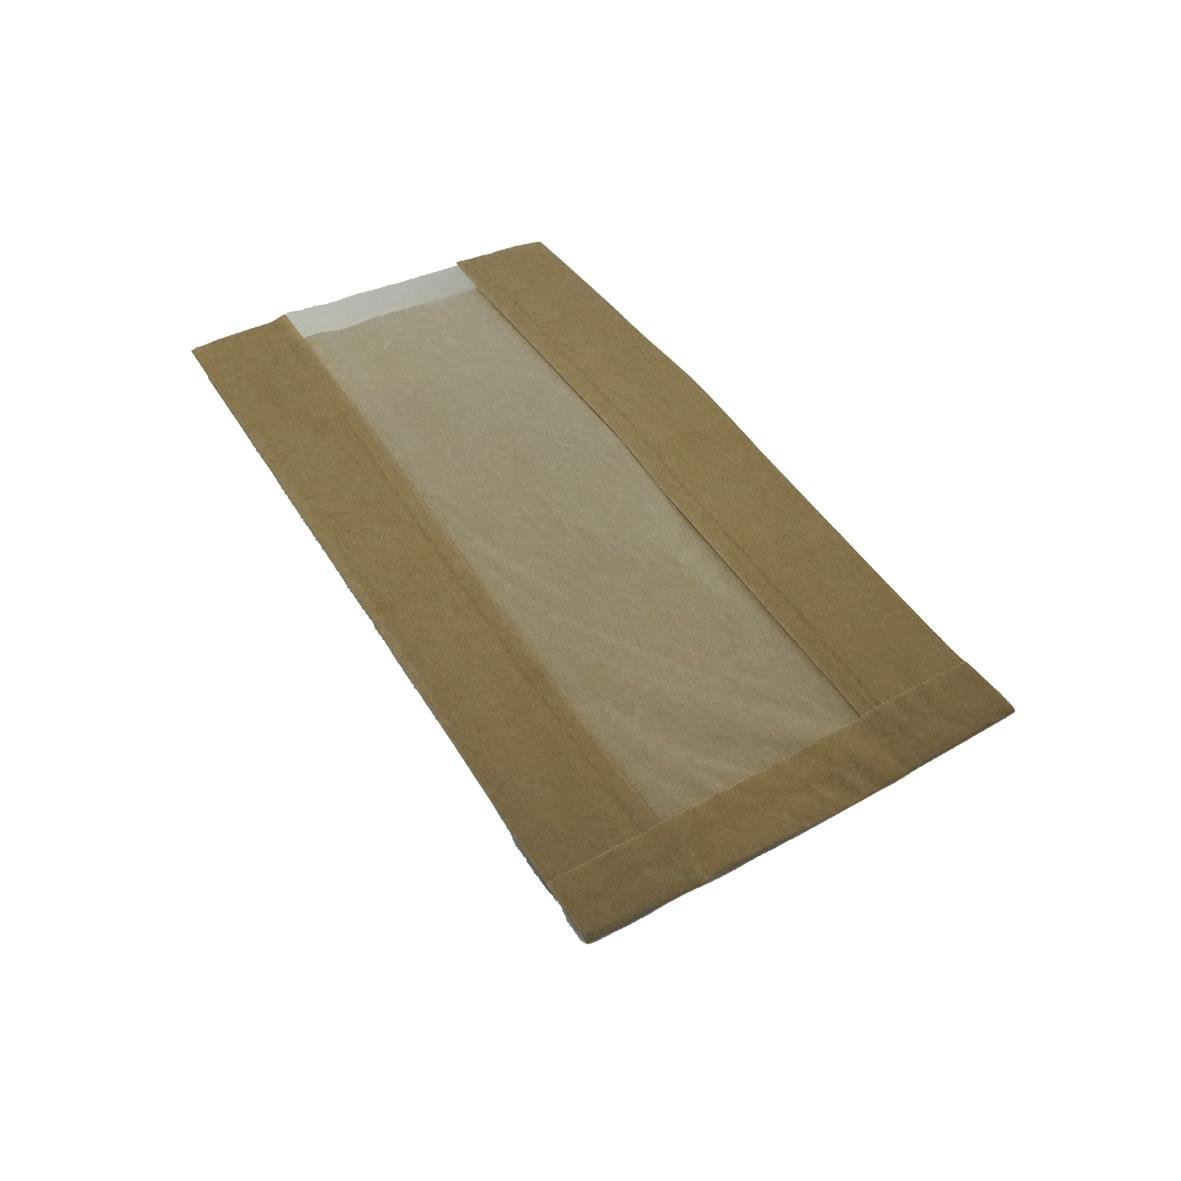 Papperspåse m pappersfönster 1,5kg Brun 160/100x320 mm 49050016_1